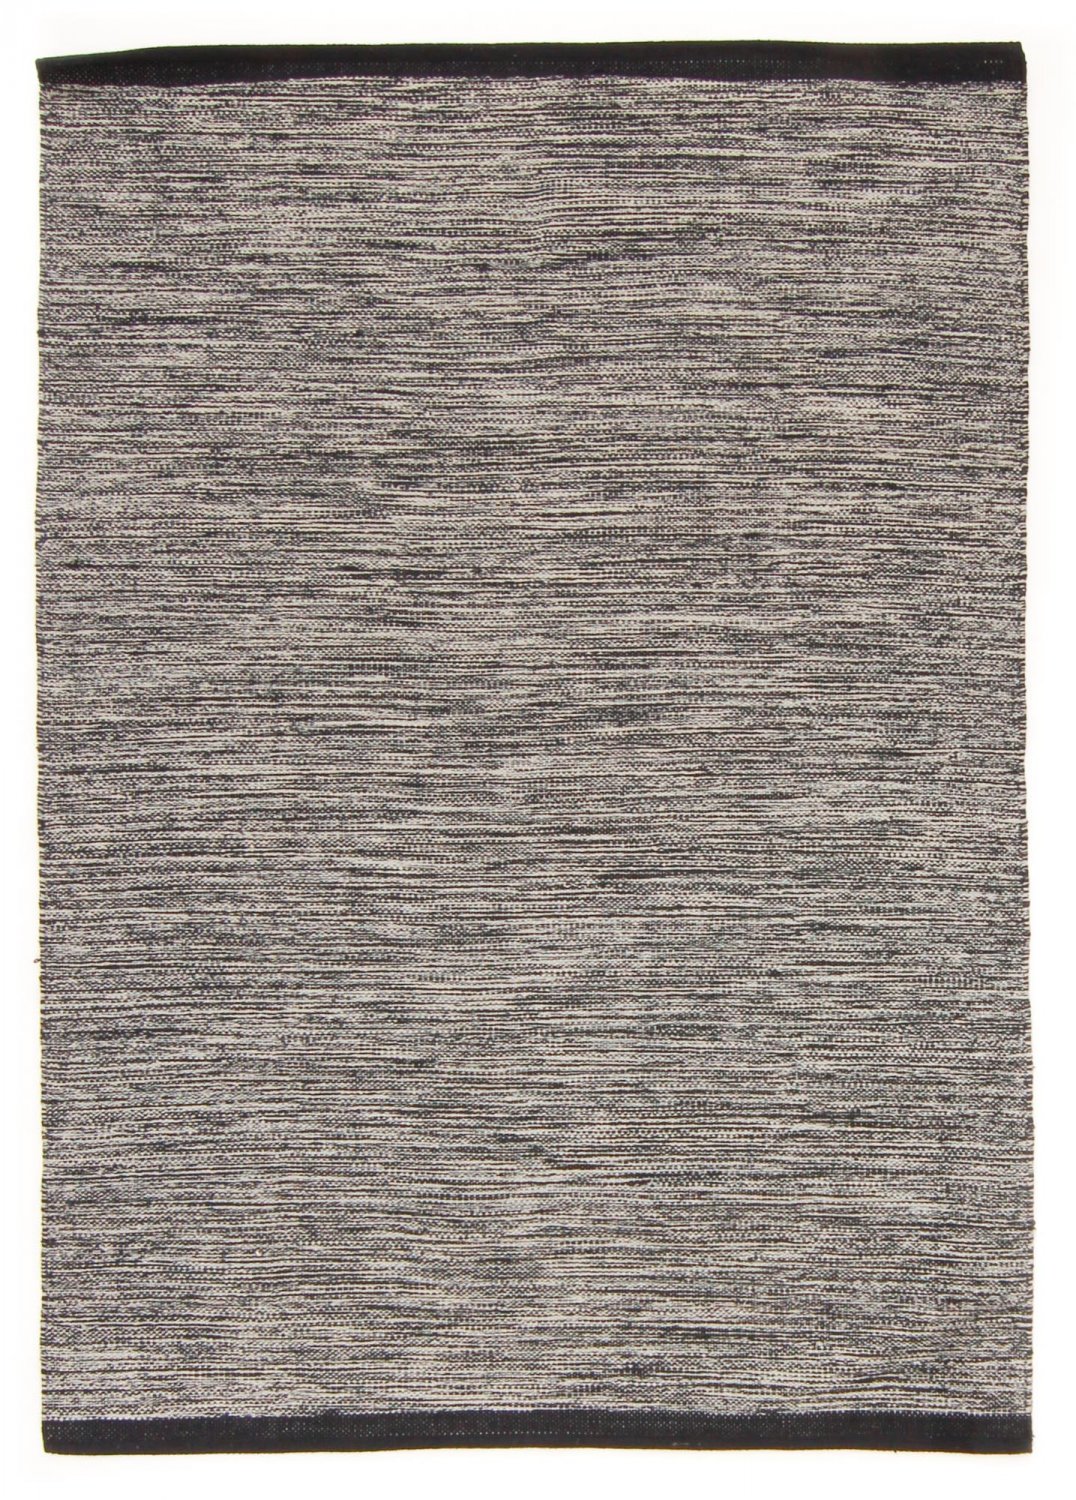 Rag rugs - Slite (grey)